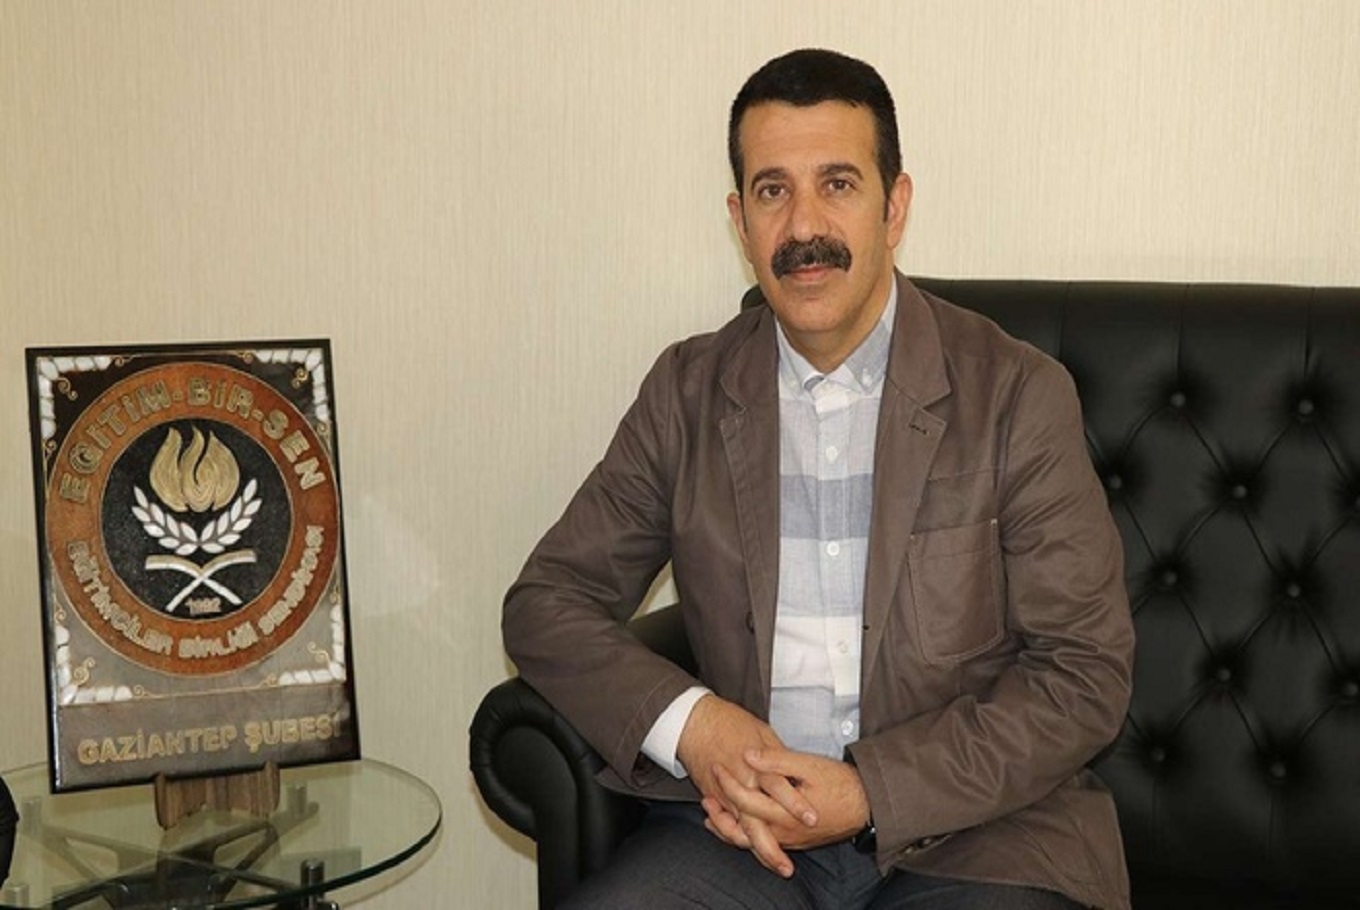 Eğitim-Bir-Sen Gaziantep Başkanı Ahmet Gök: Öğretmenlik sınavla test edilecek bir meslek değildir  